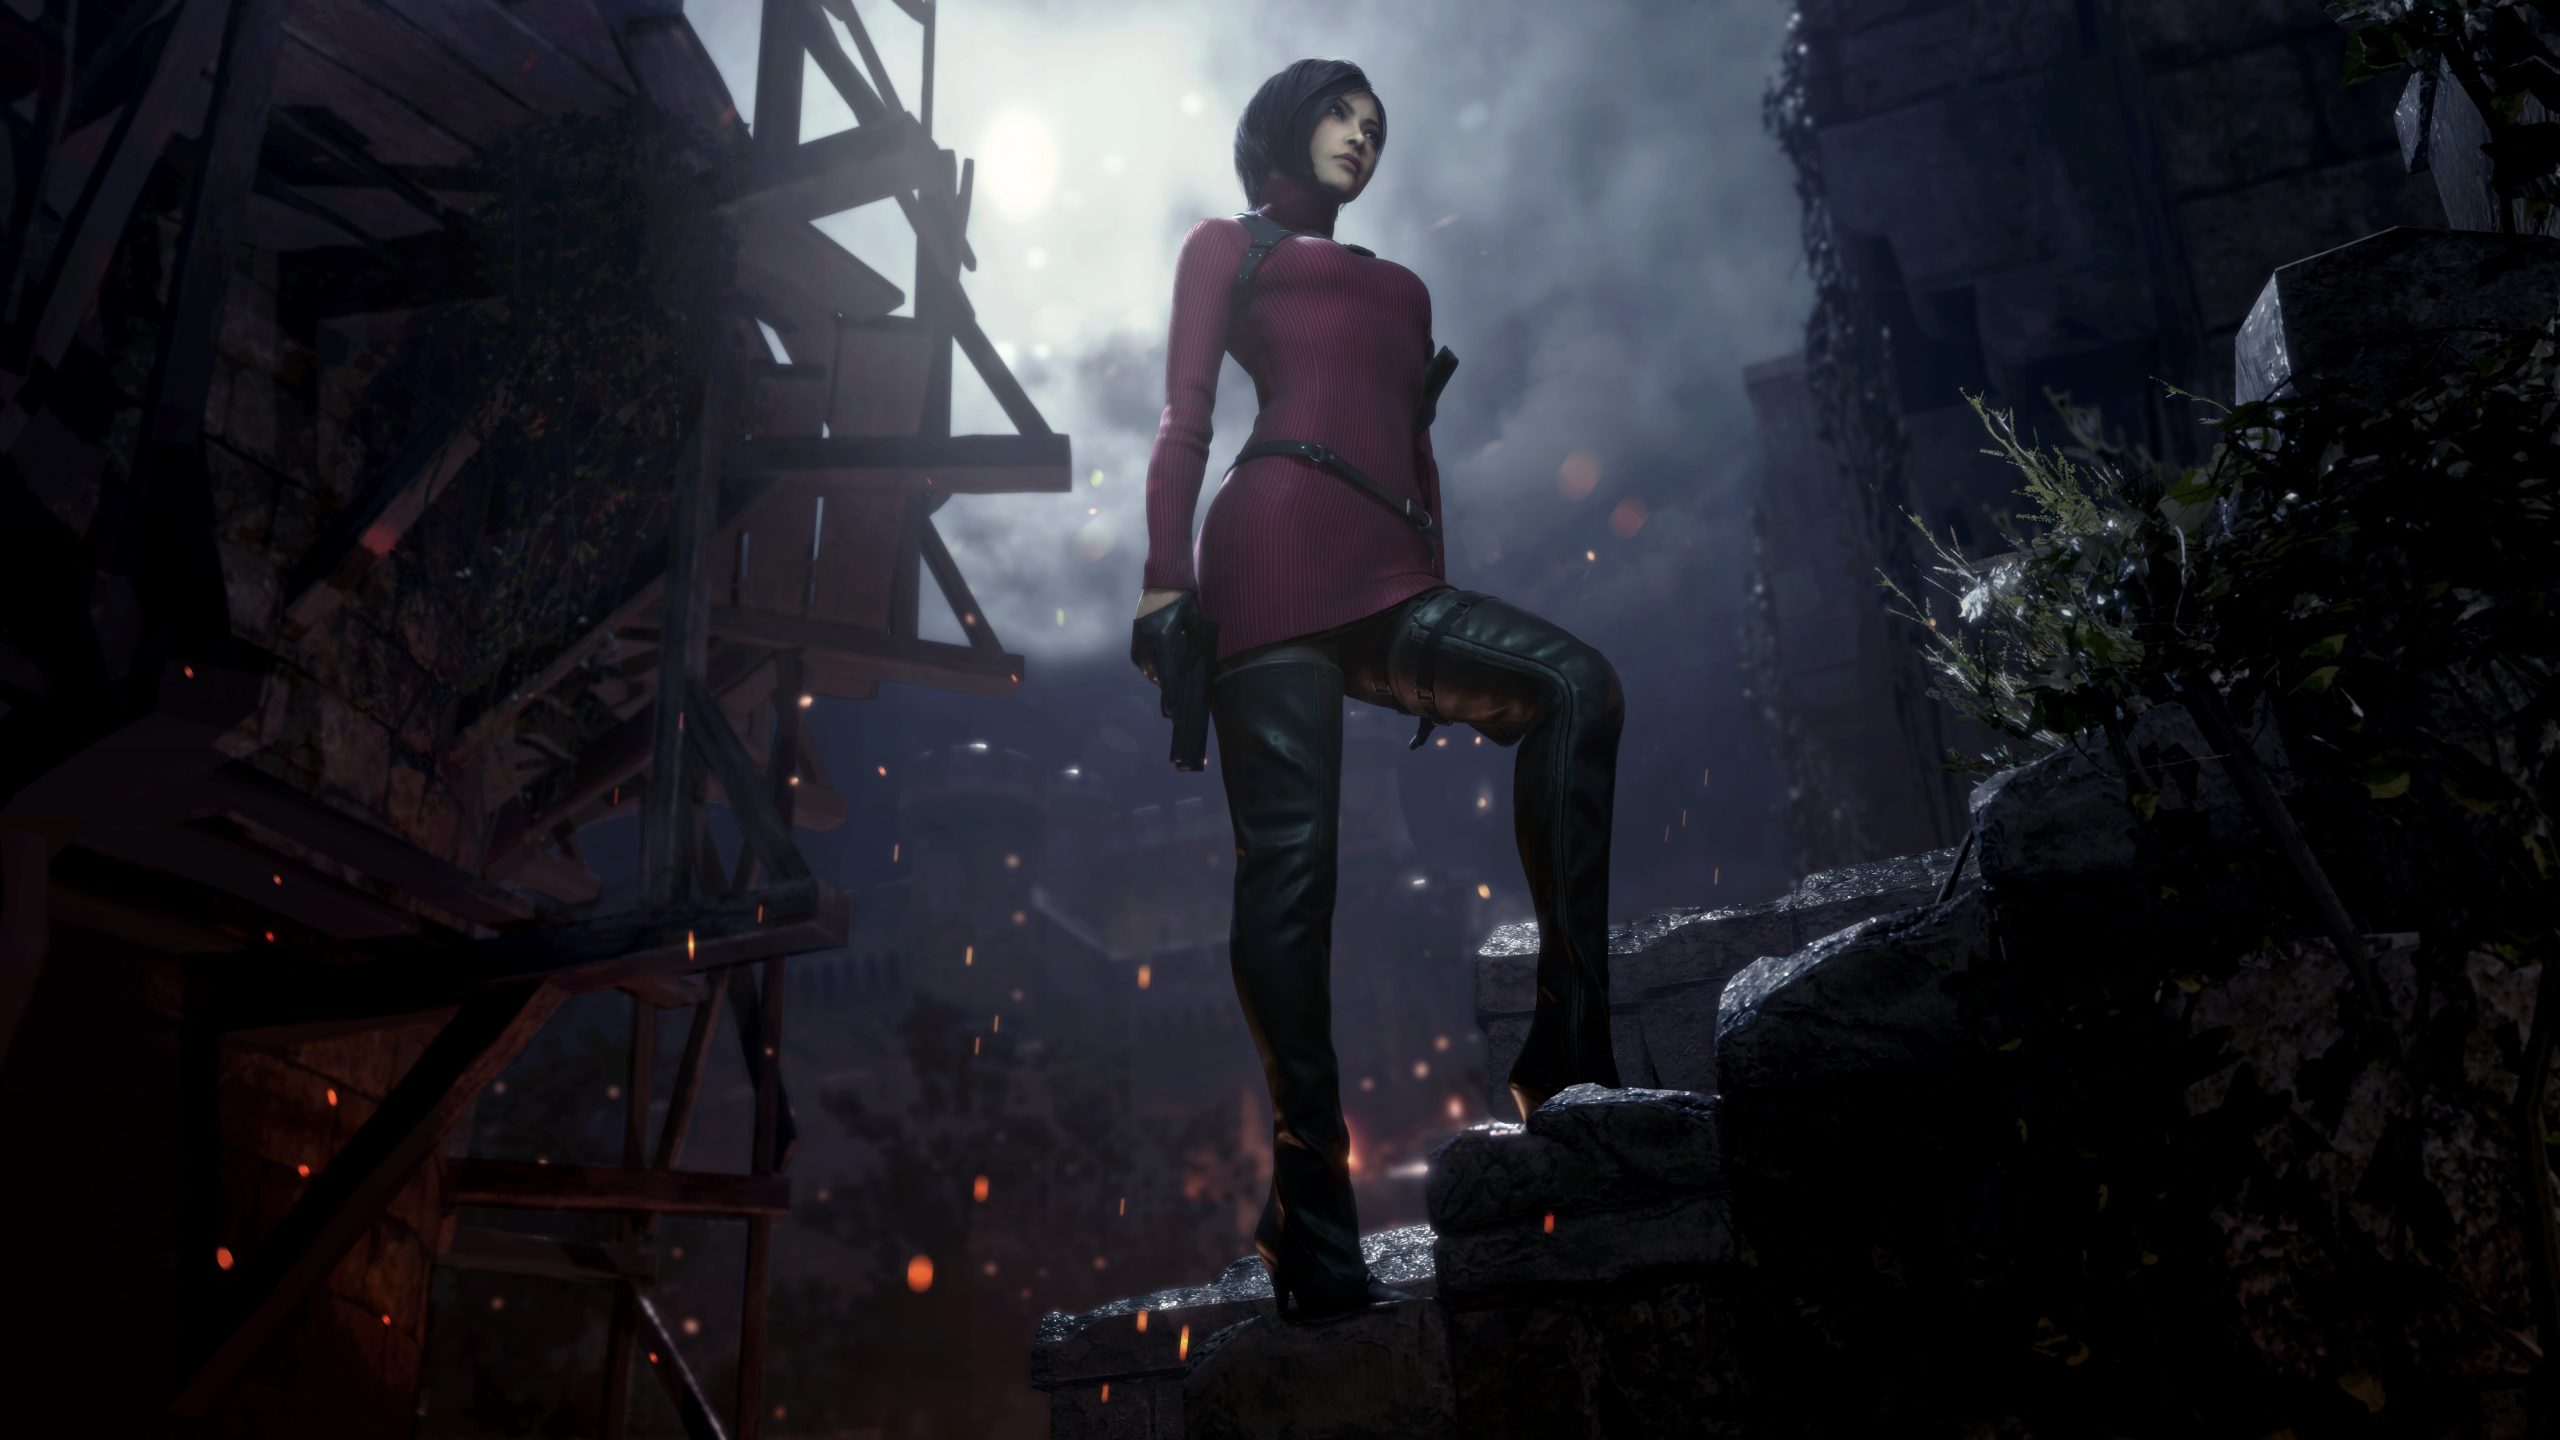 Resident Evil 4 remake entra em promoção pela primeira vez; DLC